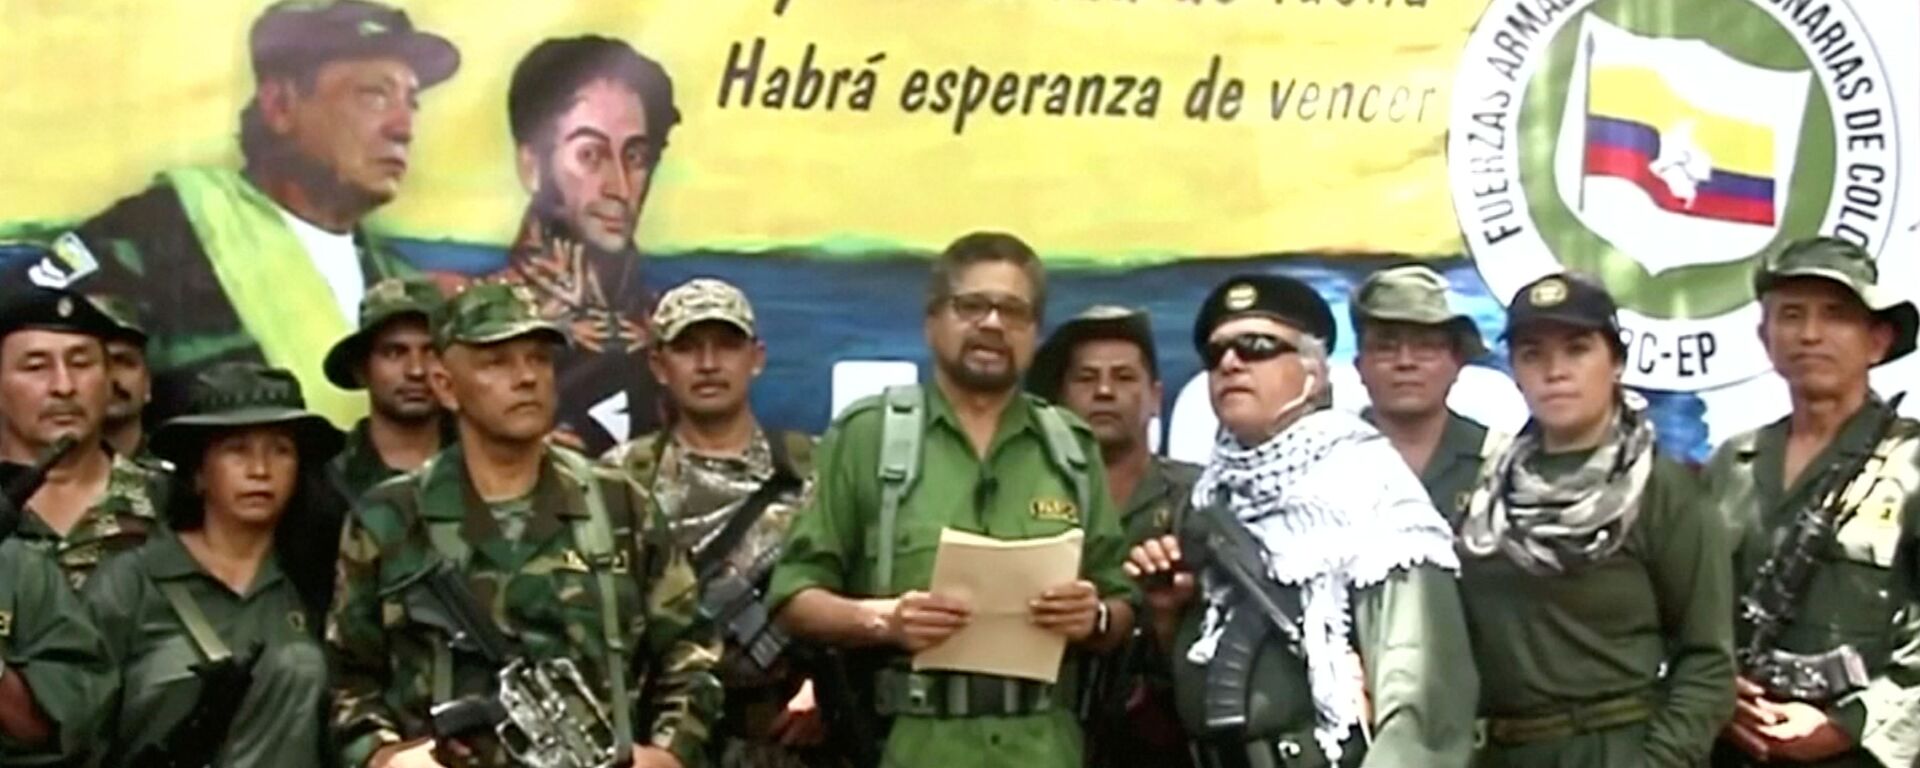 El excomandante de las FARC, Iván Márquez, anuncia que retoma la lucha armada  - Sputnik Mundo, 1920, 30.08.2019